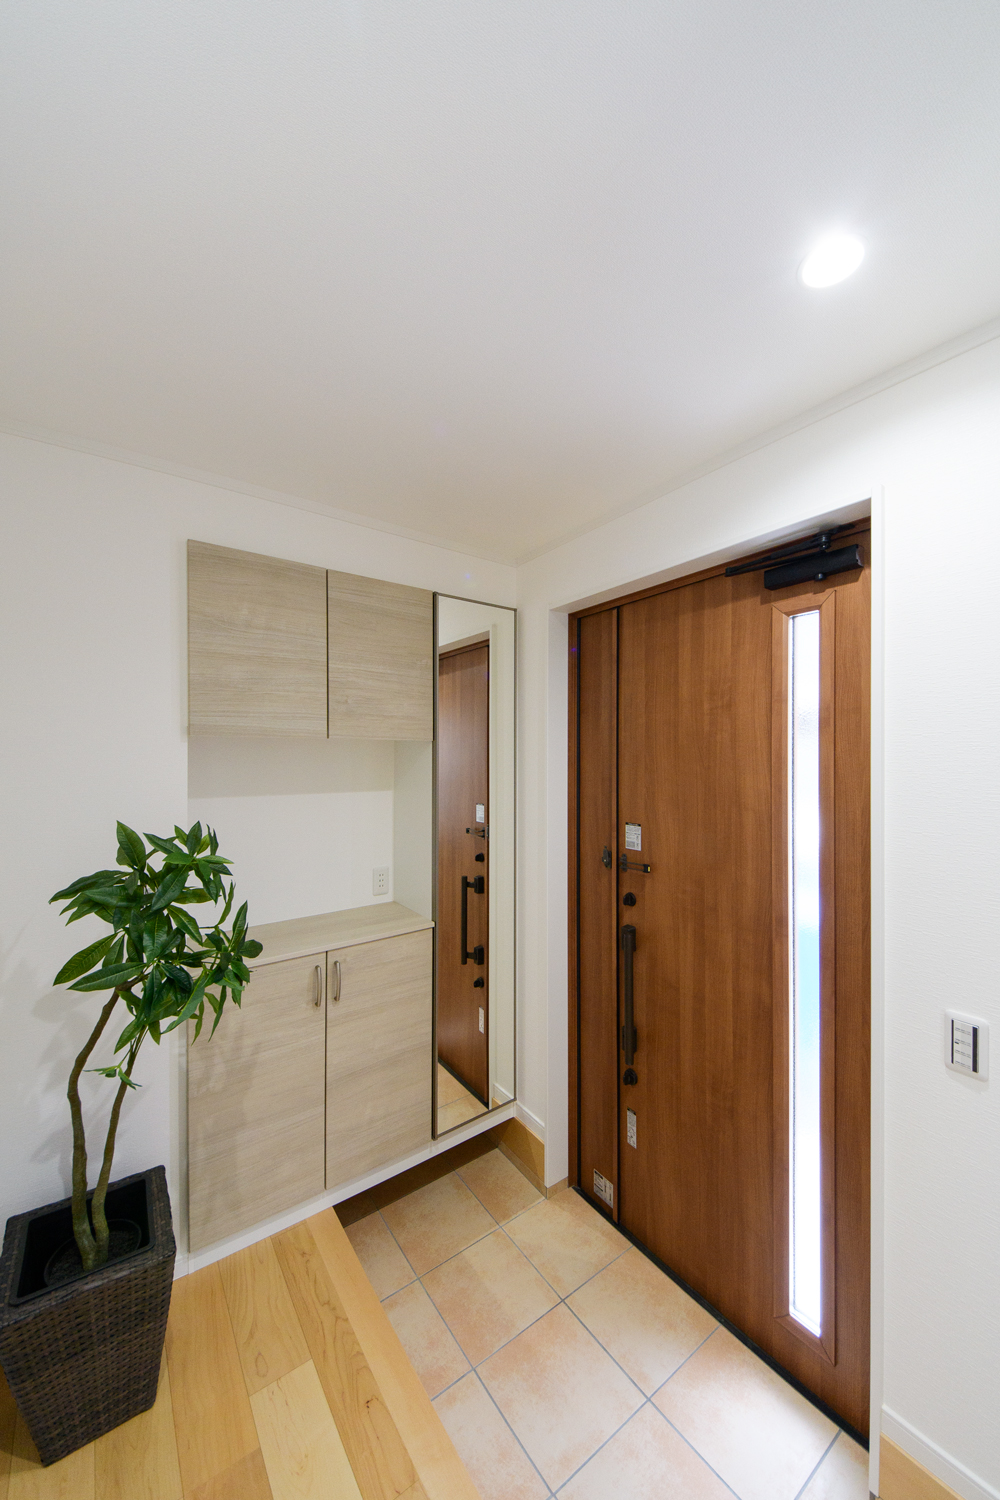 木の温もり感じる玄関ドアと収納、ベージュのテラコッタ調タイルが穏やかな空間を演出。